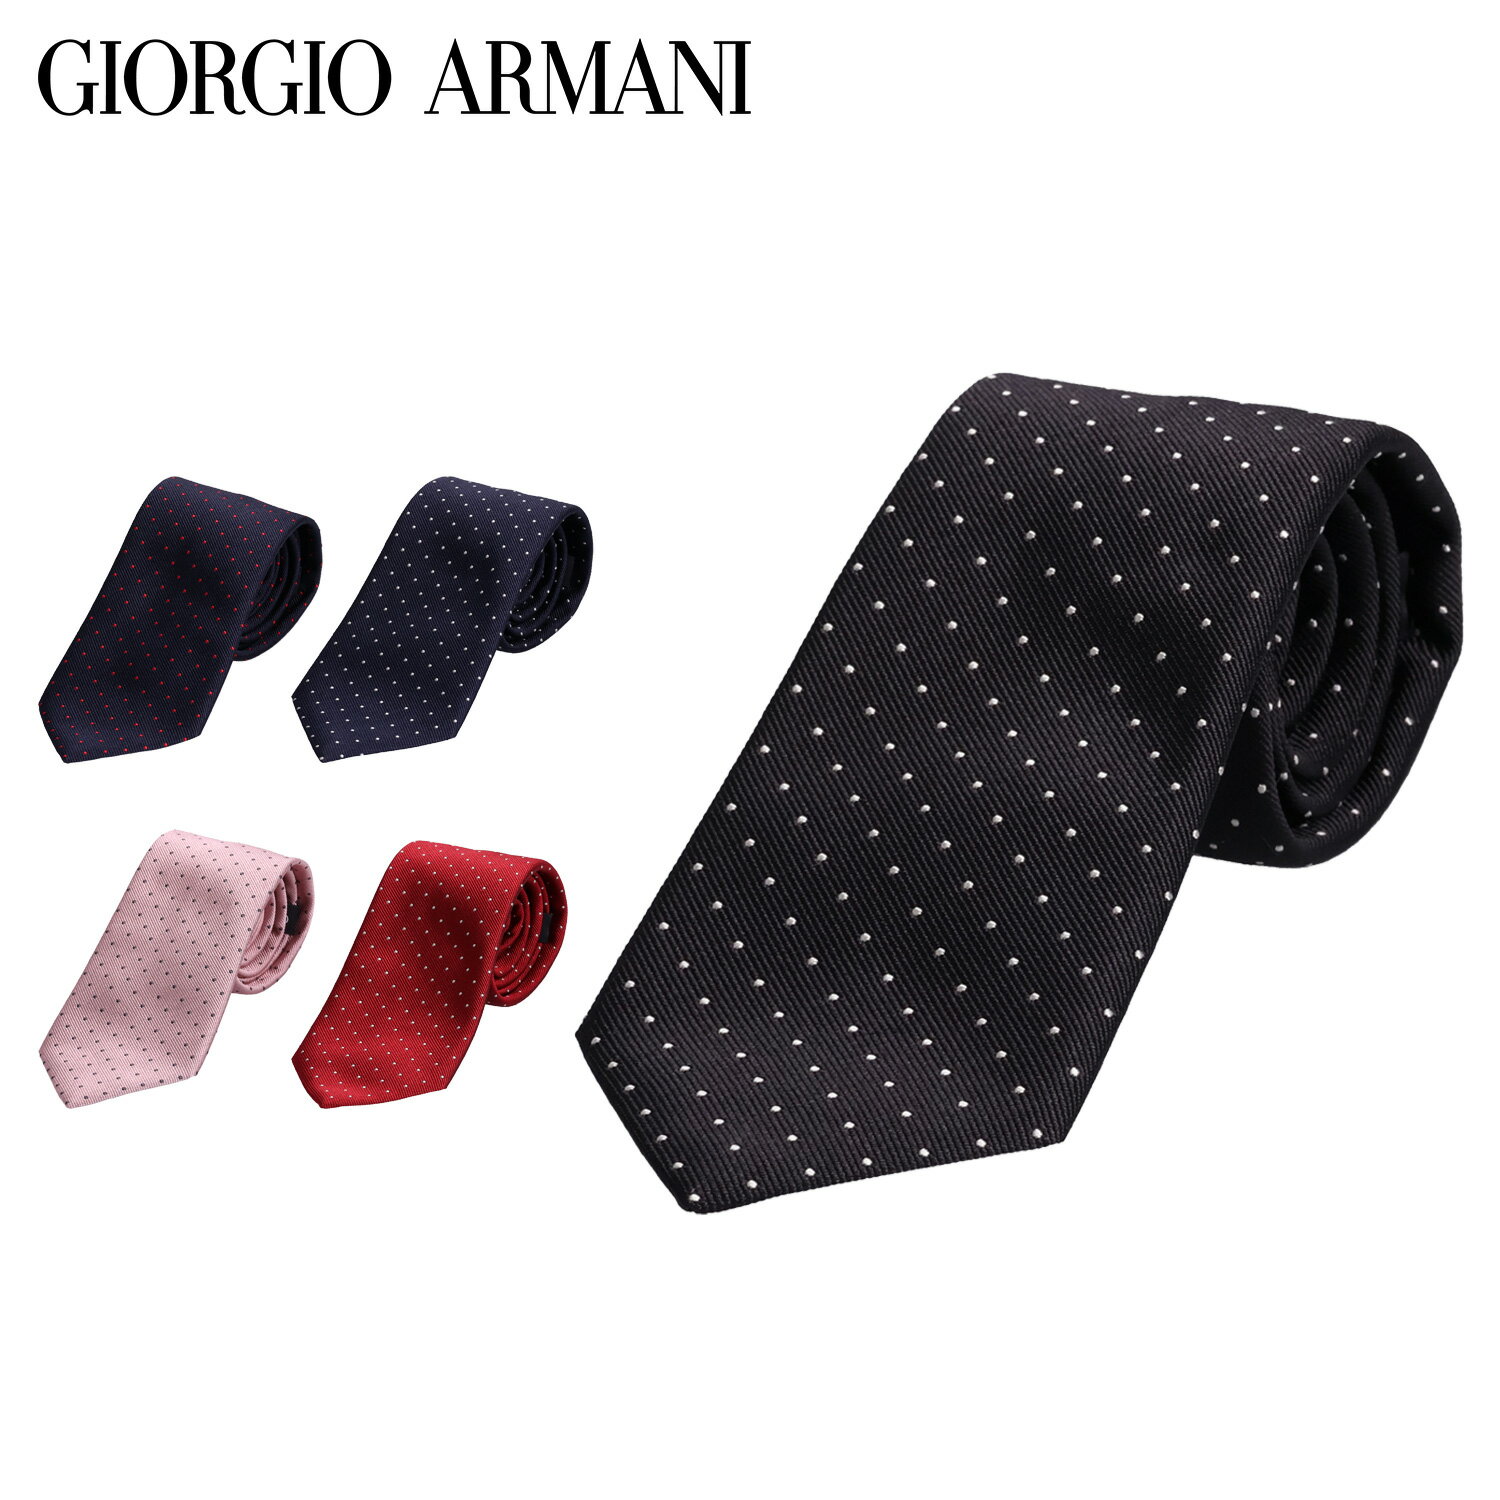 アルマーニ ネクタイ GIORGIO ARMANI ジョルジオアルマーニ ネクタイ メンズ シルク ブランド イタリア製 NECKTIE